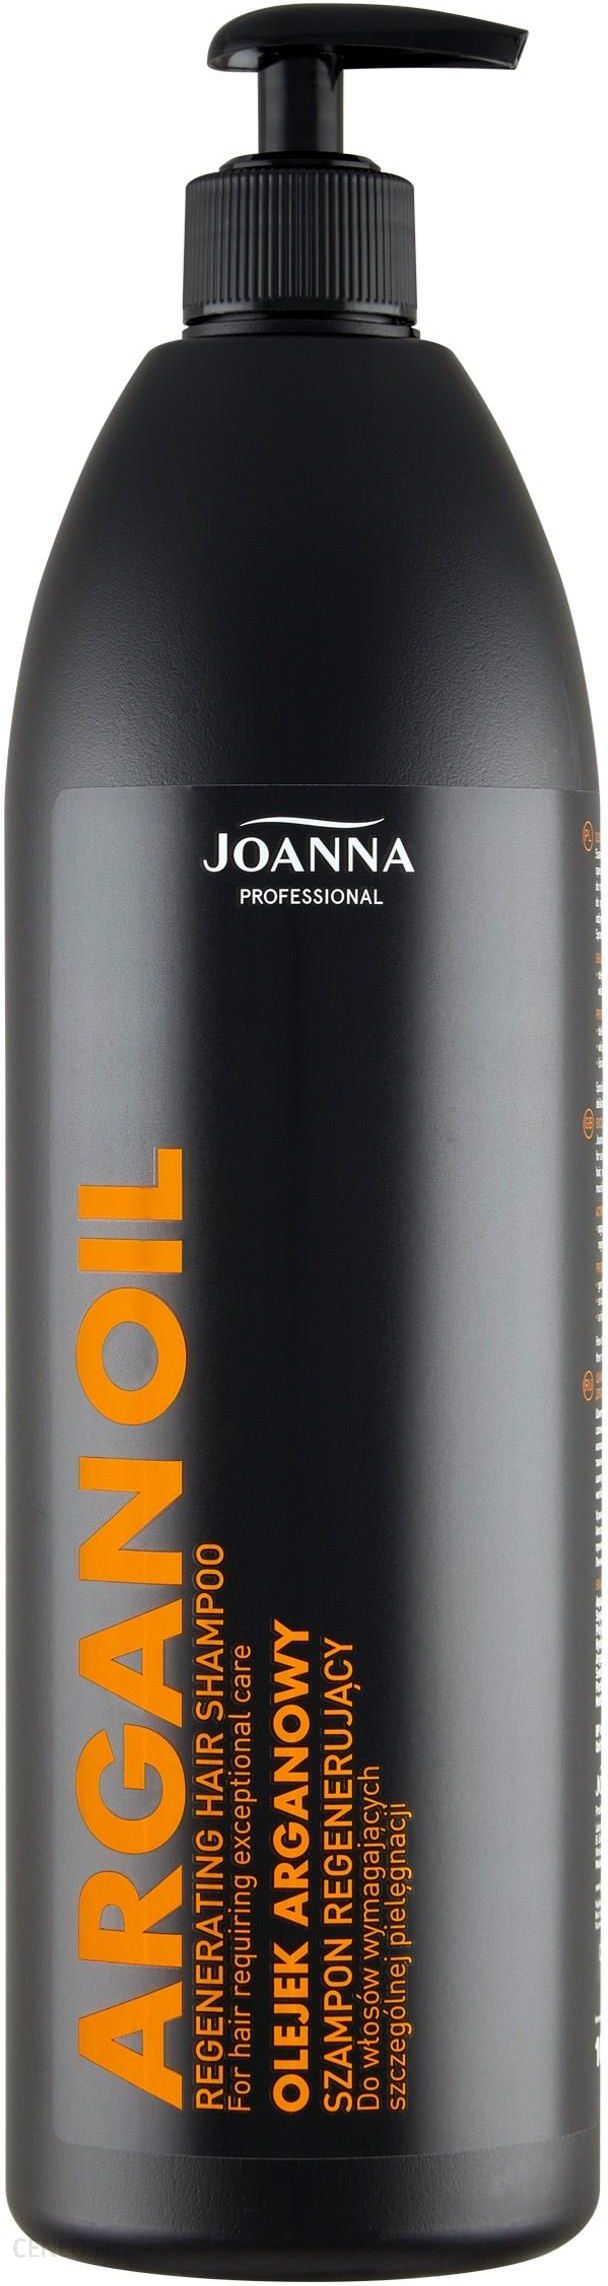 joanna professional szampon z olejkiem arganowym